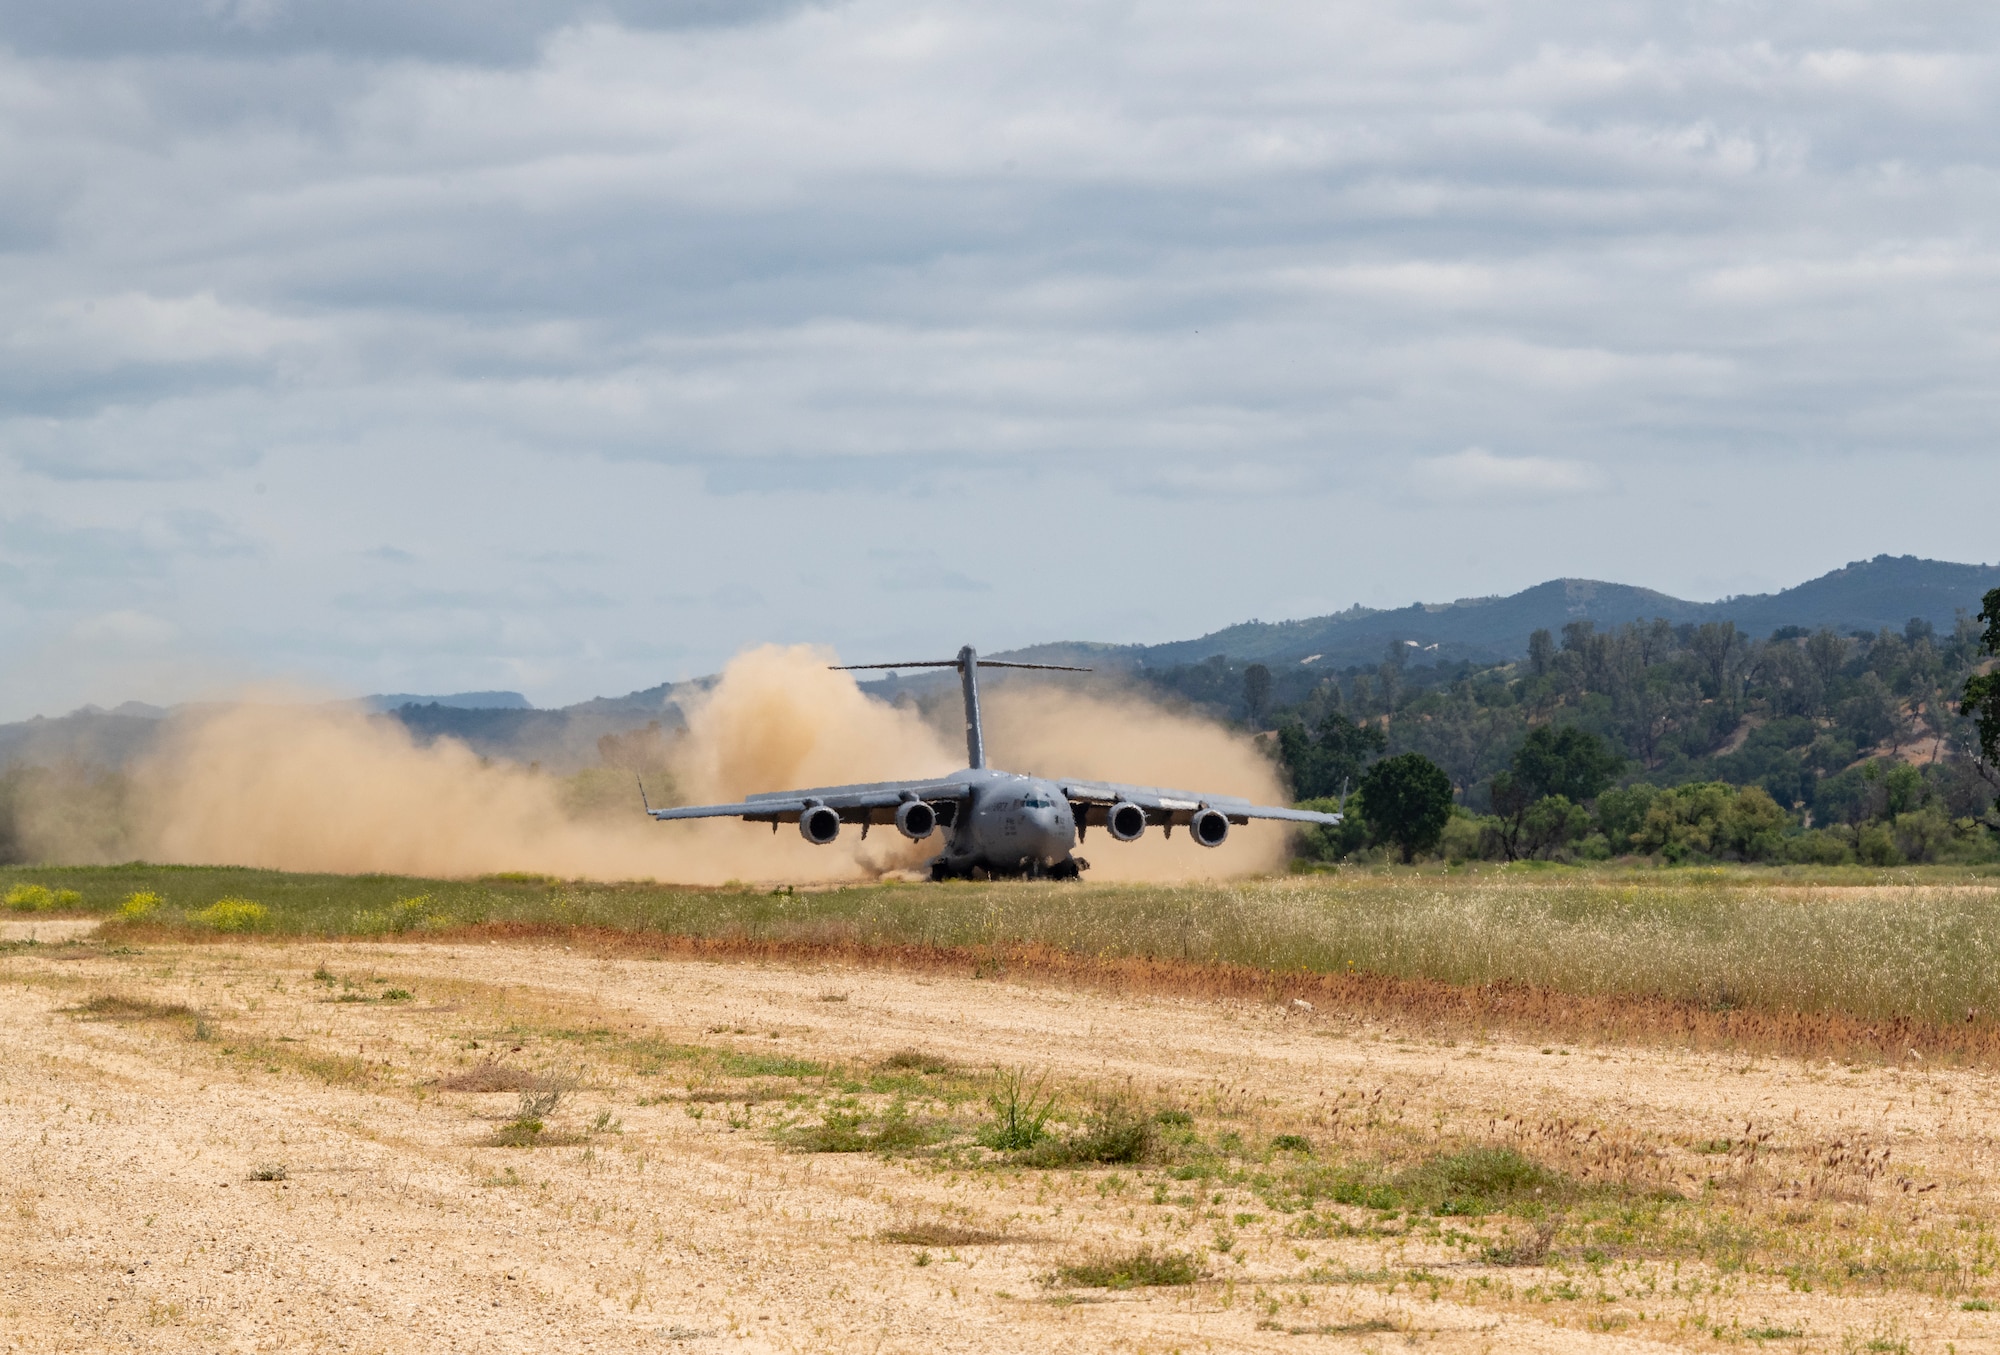 An aircraft lands on a dirt runway